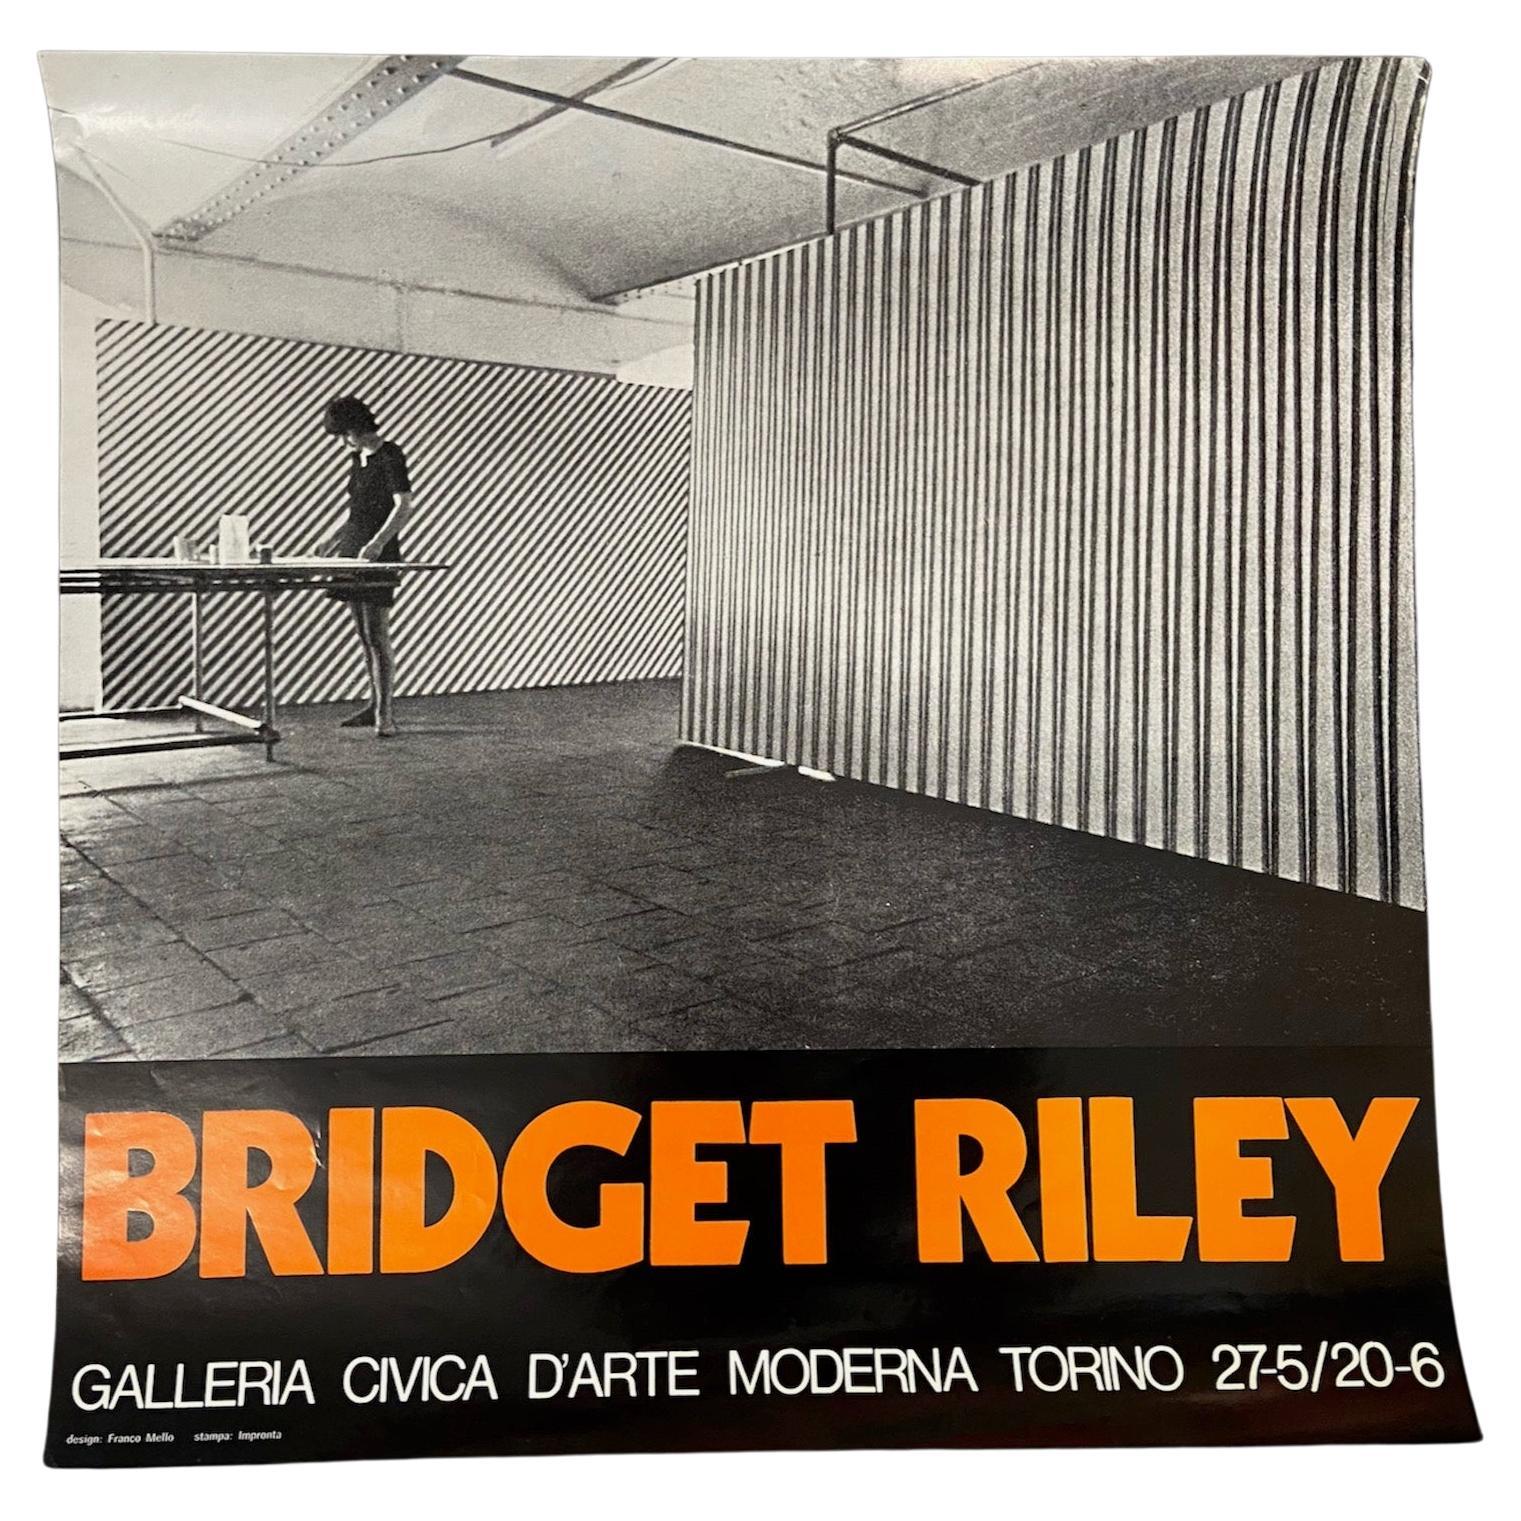 Bridget Riley, affiche originale de l'exposition de 1971, am designs de Franco Mello